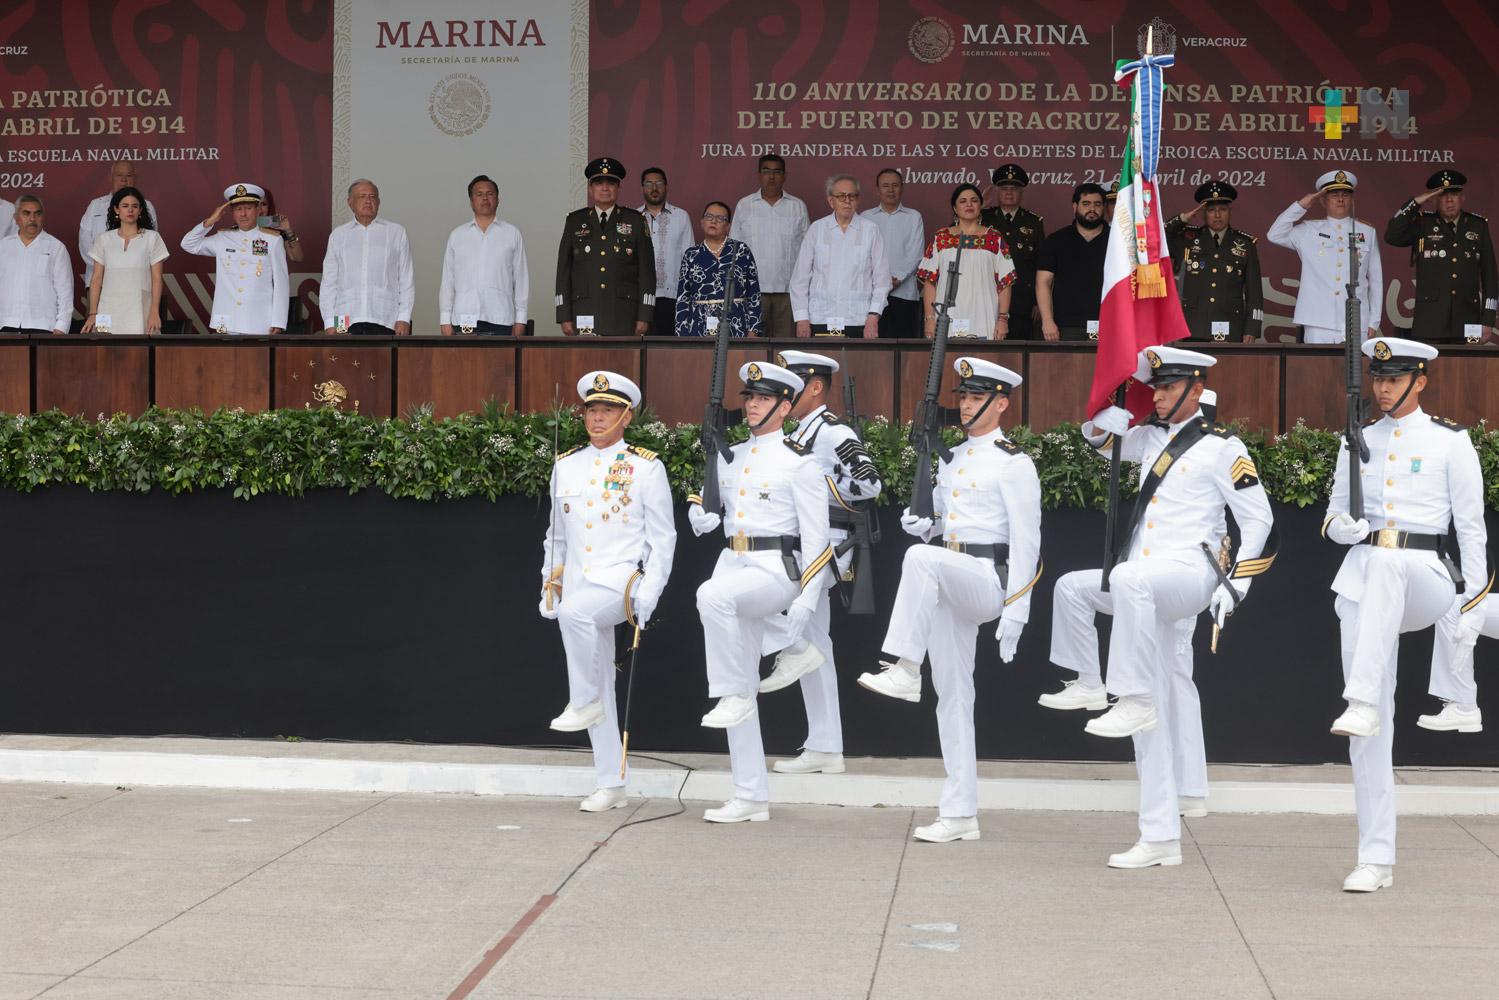 Presidente encabeza el 110 aniversario de la Defensa del puerto de Veracruz